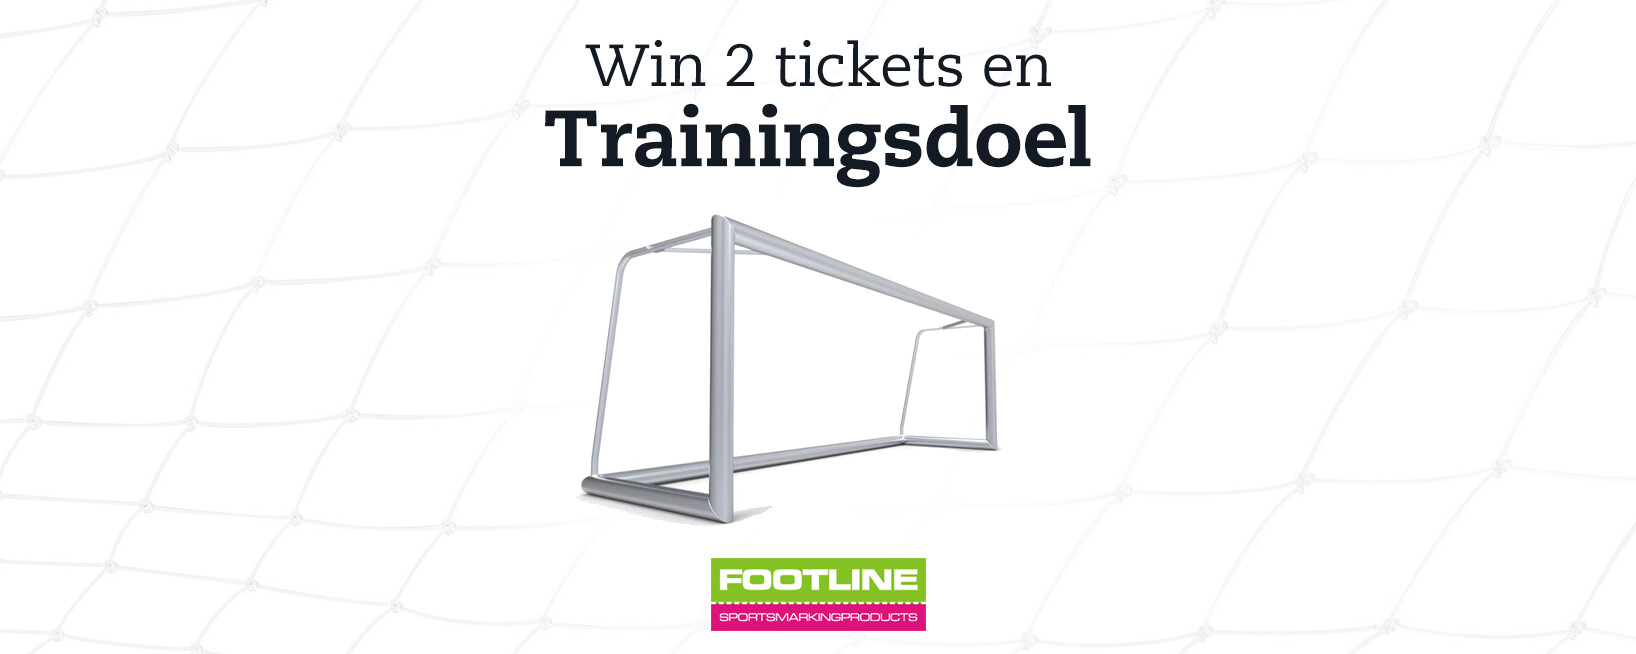 Win een trainingsdoel van Footline en 2 tickets voor een wedstrijd in de Jupiler Pro League